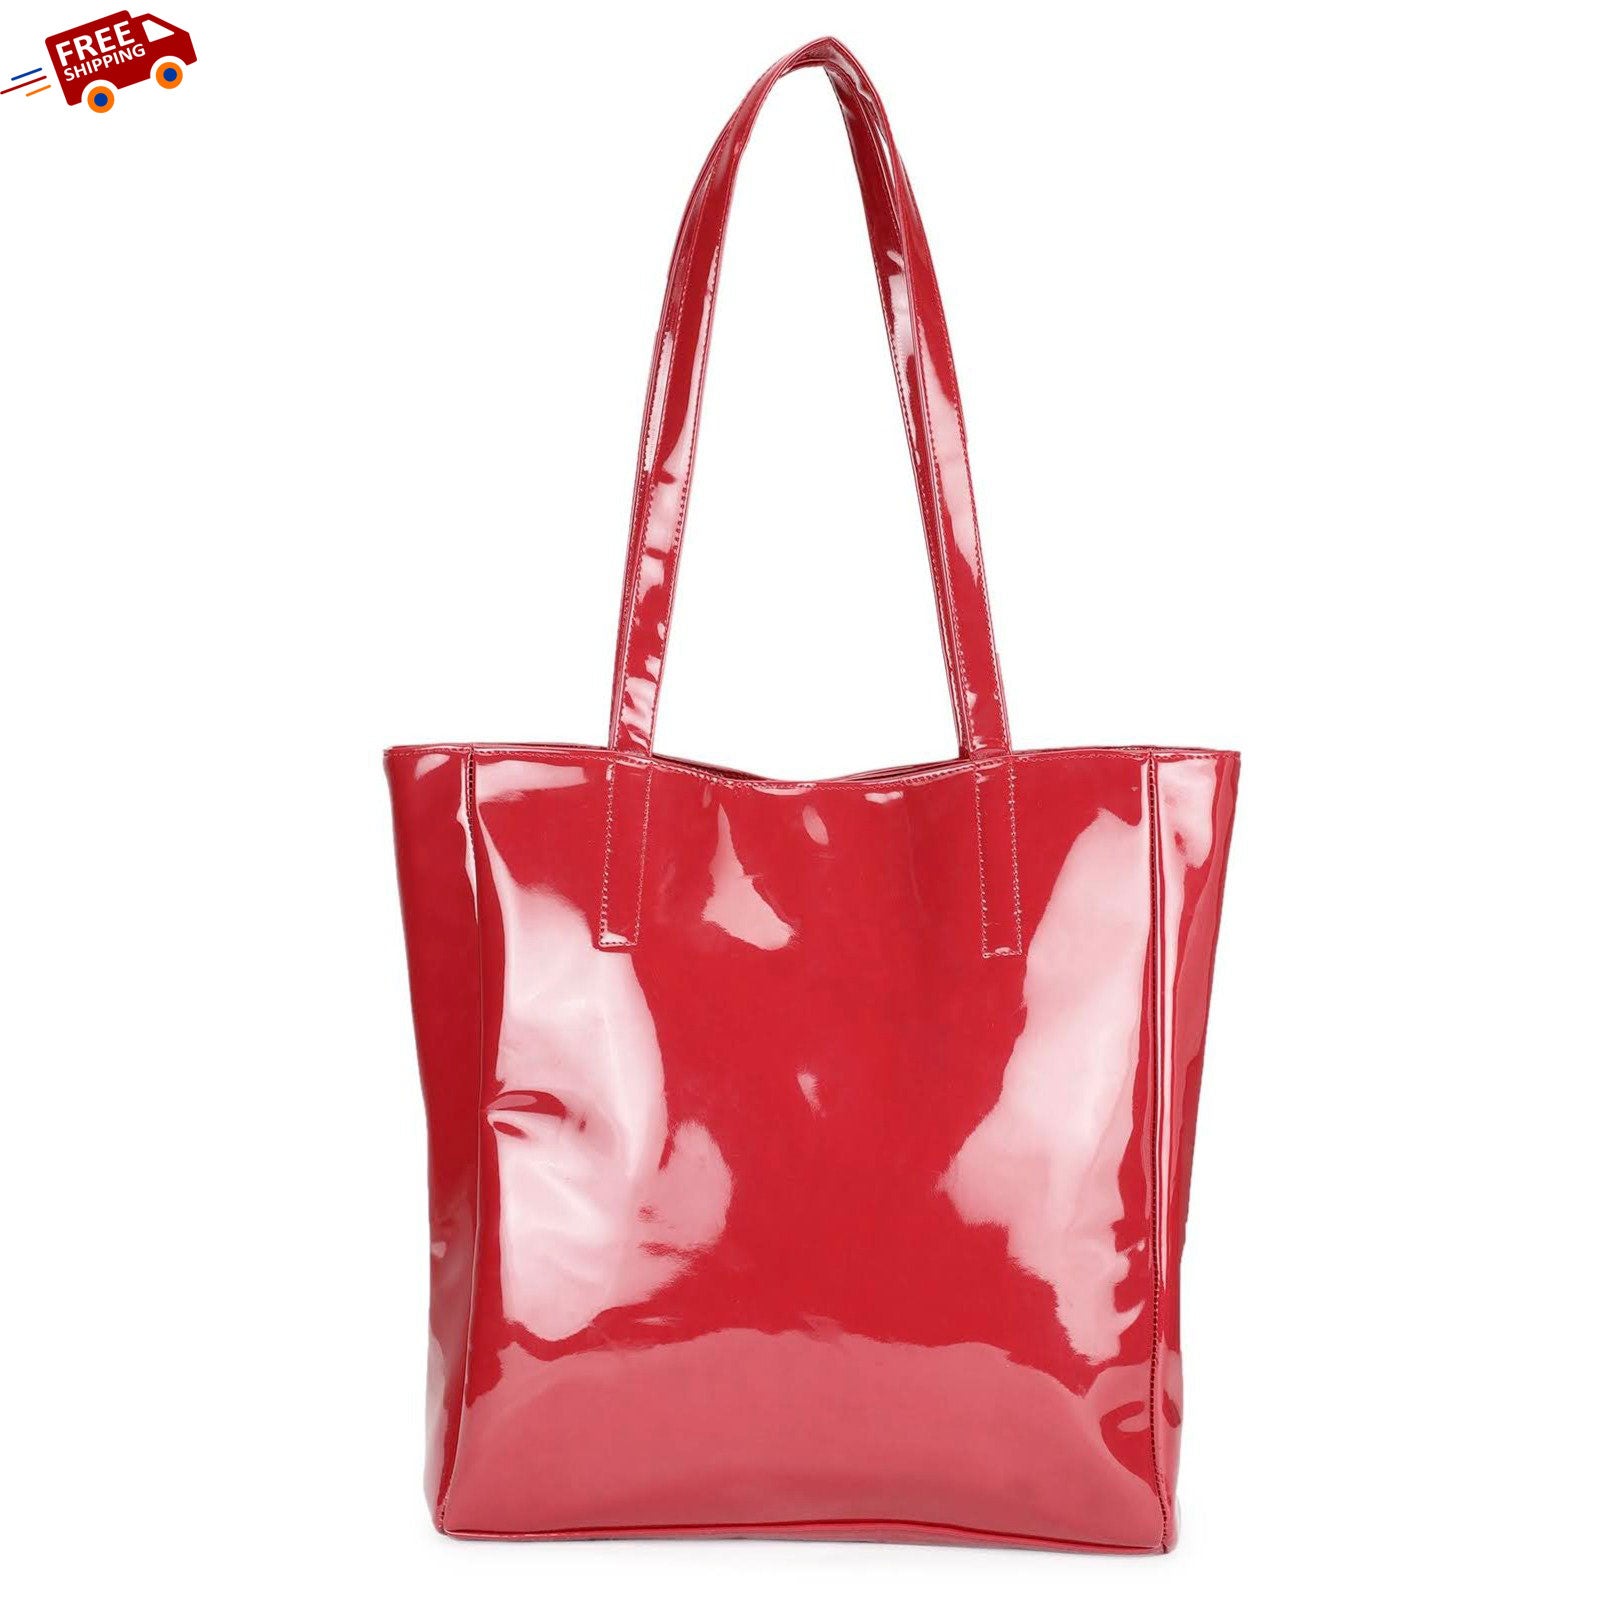 Chic Tote Handbag - Oversized, Cherry Red-Book Bargain Buy 